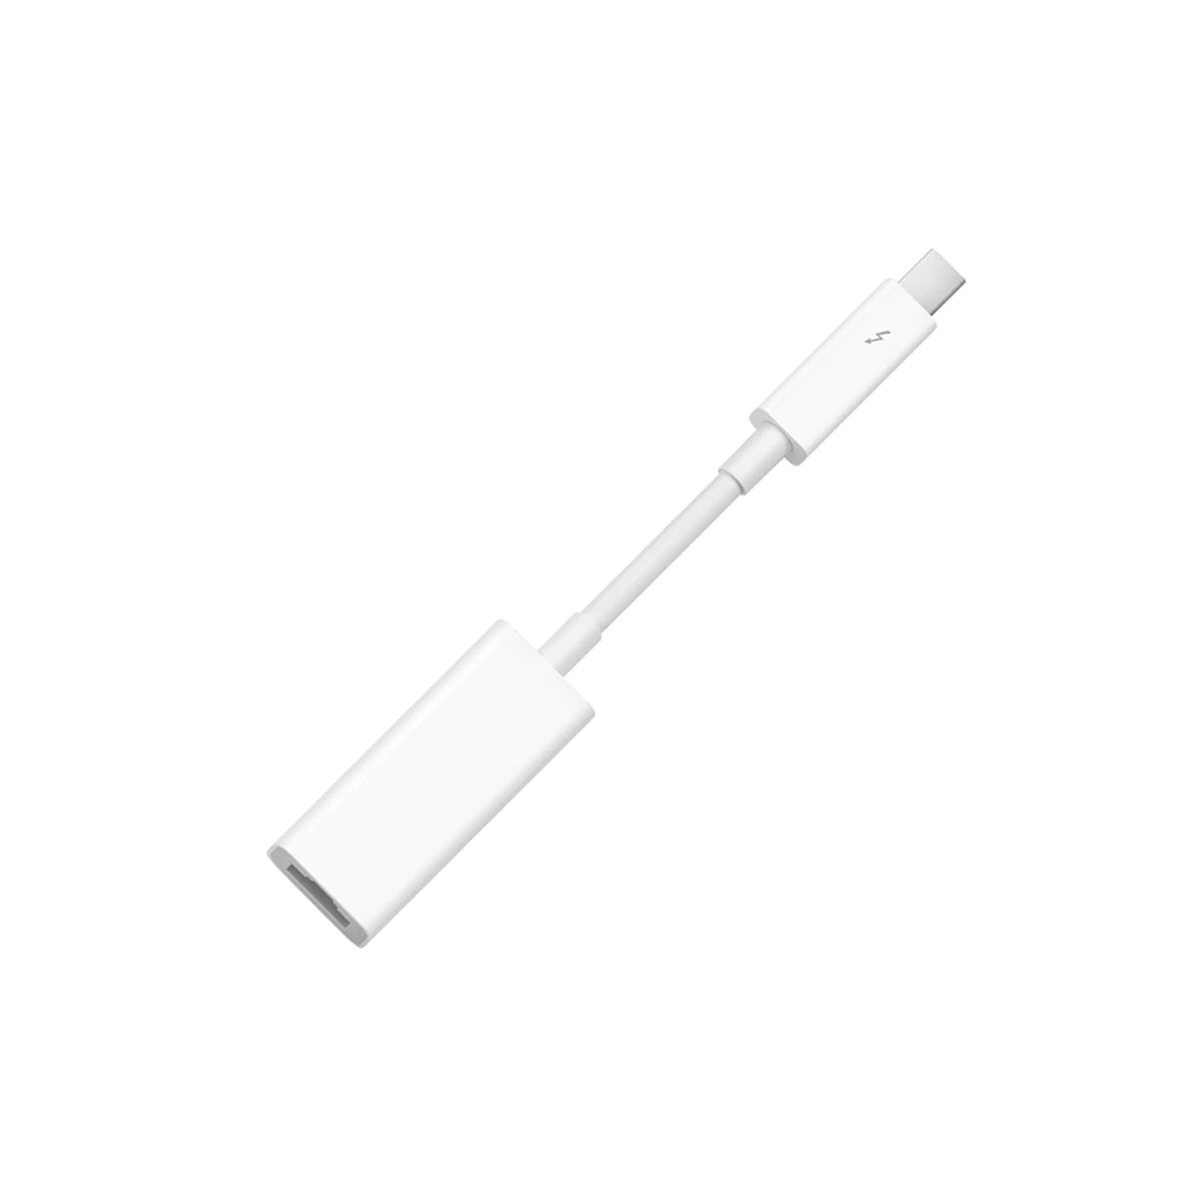 Adaptadores de conexión Apple Thunderbolt a Gigabit Ethernet